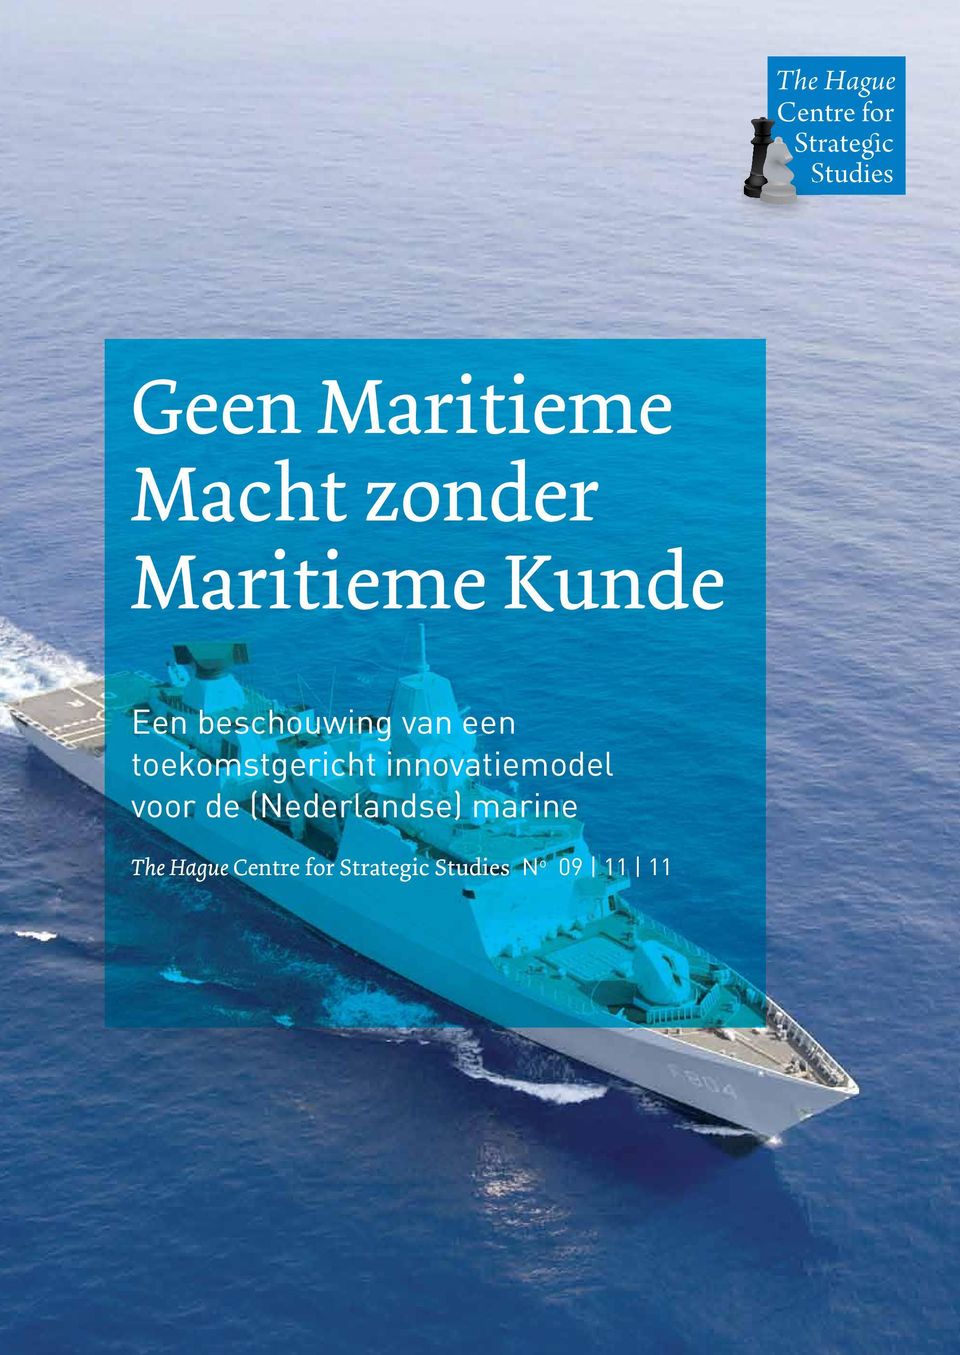 innovatiemodel voor de (Nederlandse) marine